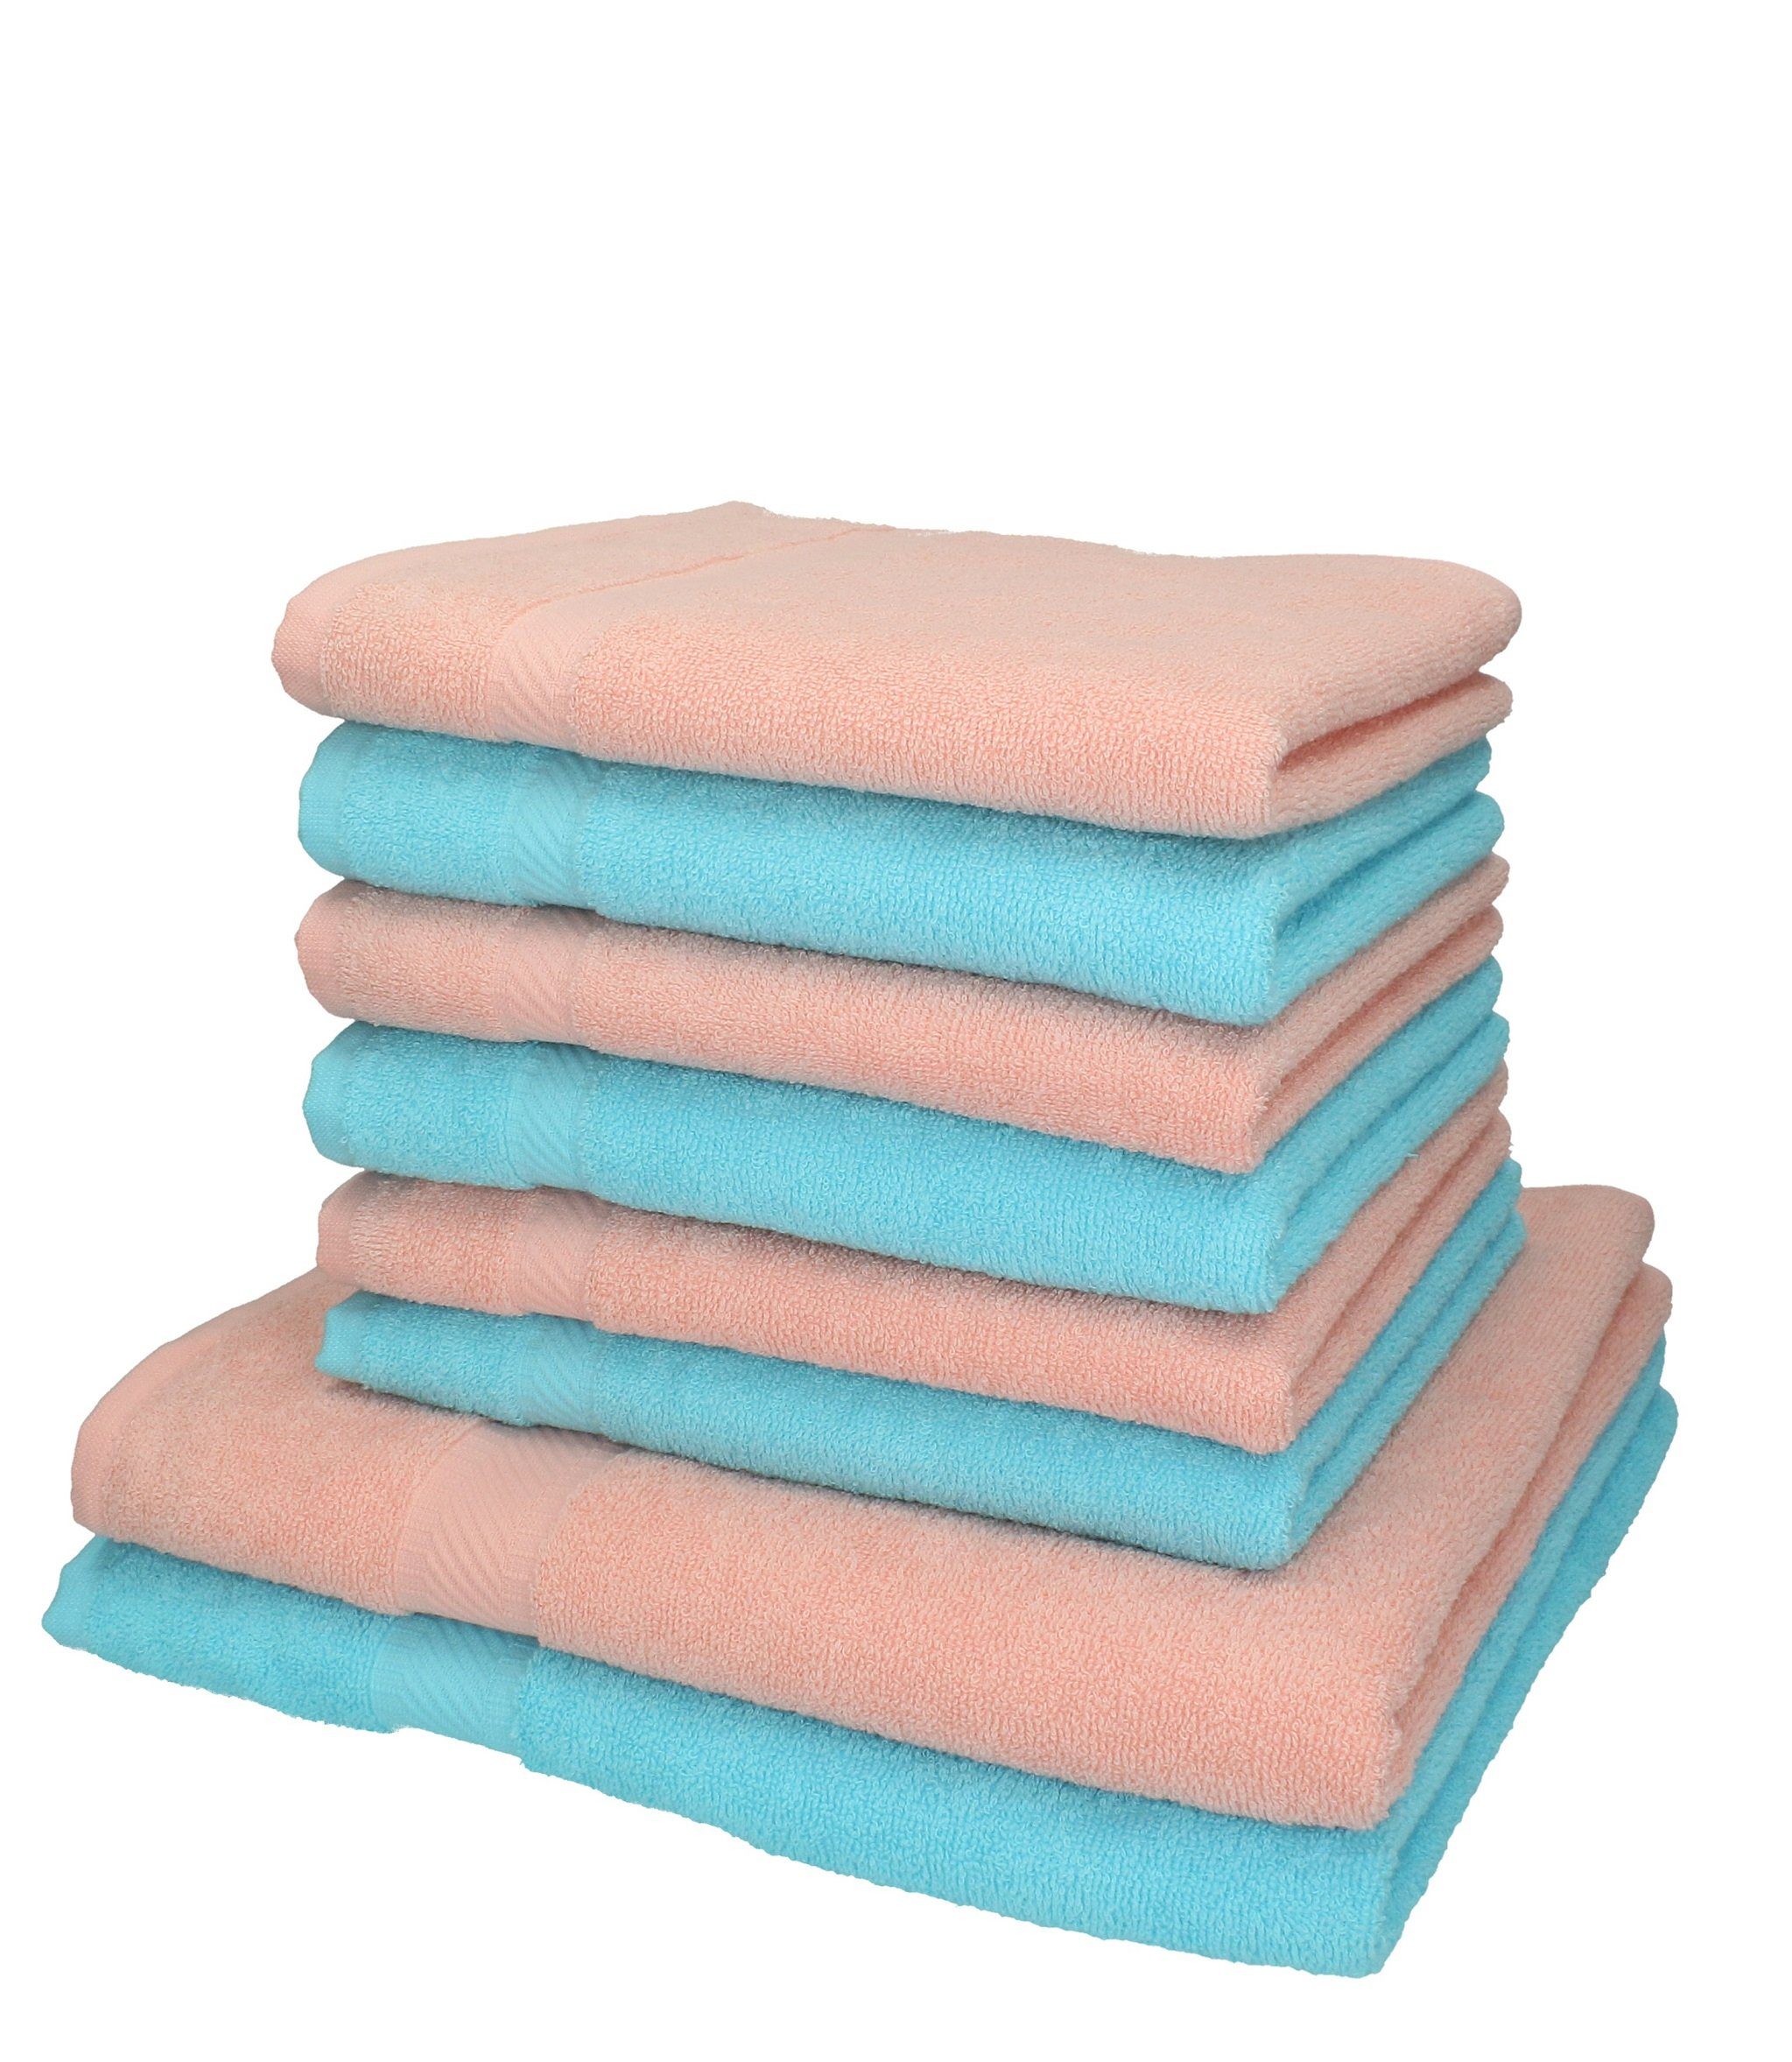 Betz Handtuch Set 8-tlg. Handtuch-Set Palermo 100% Baumwolle Farbe apricot und türkis, 100% Baumwolle